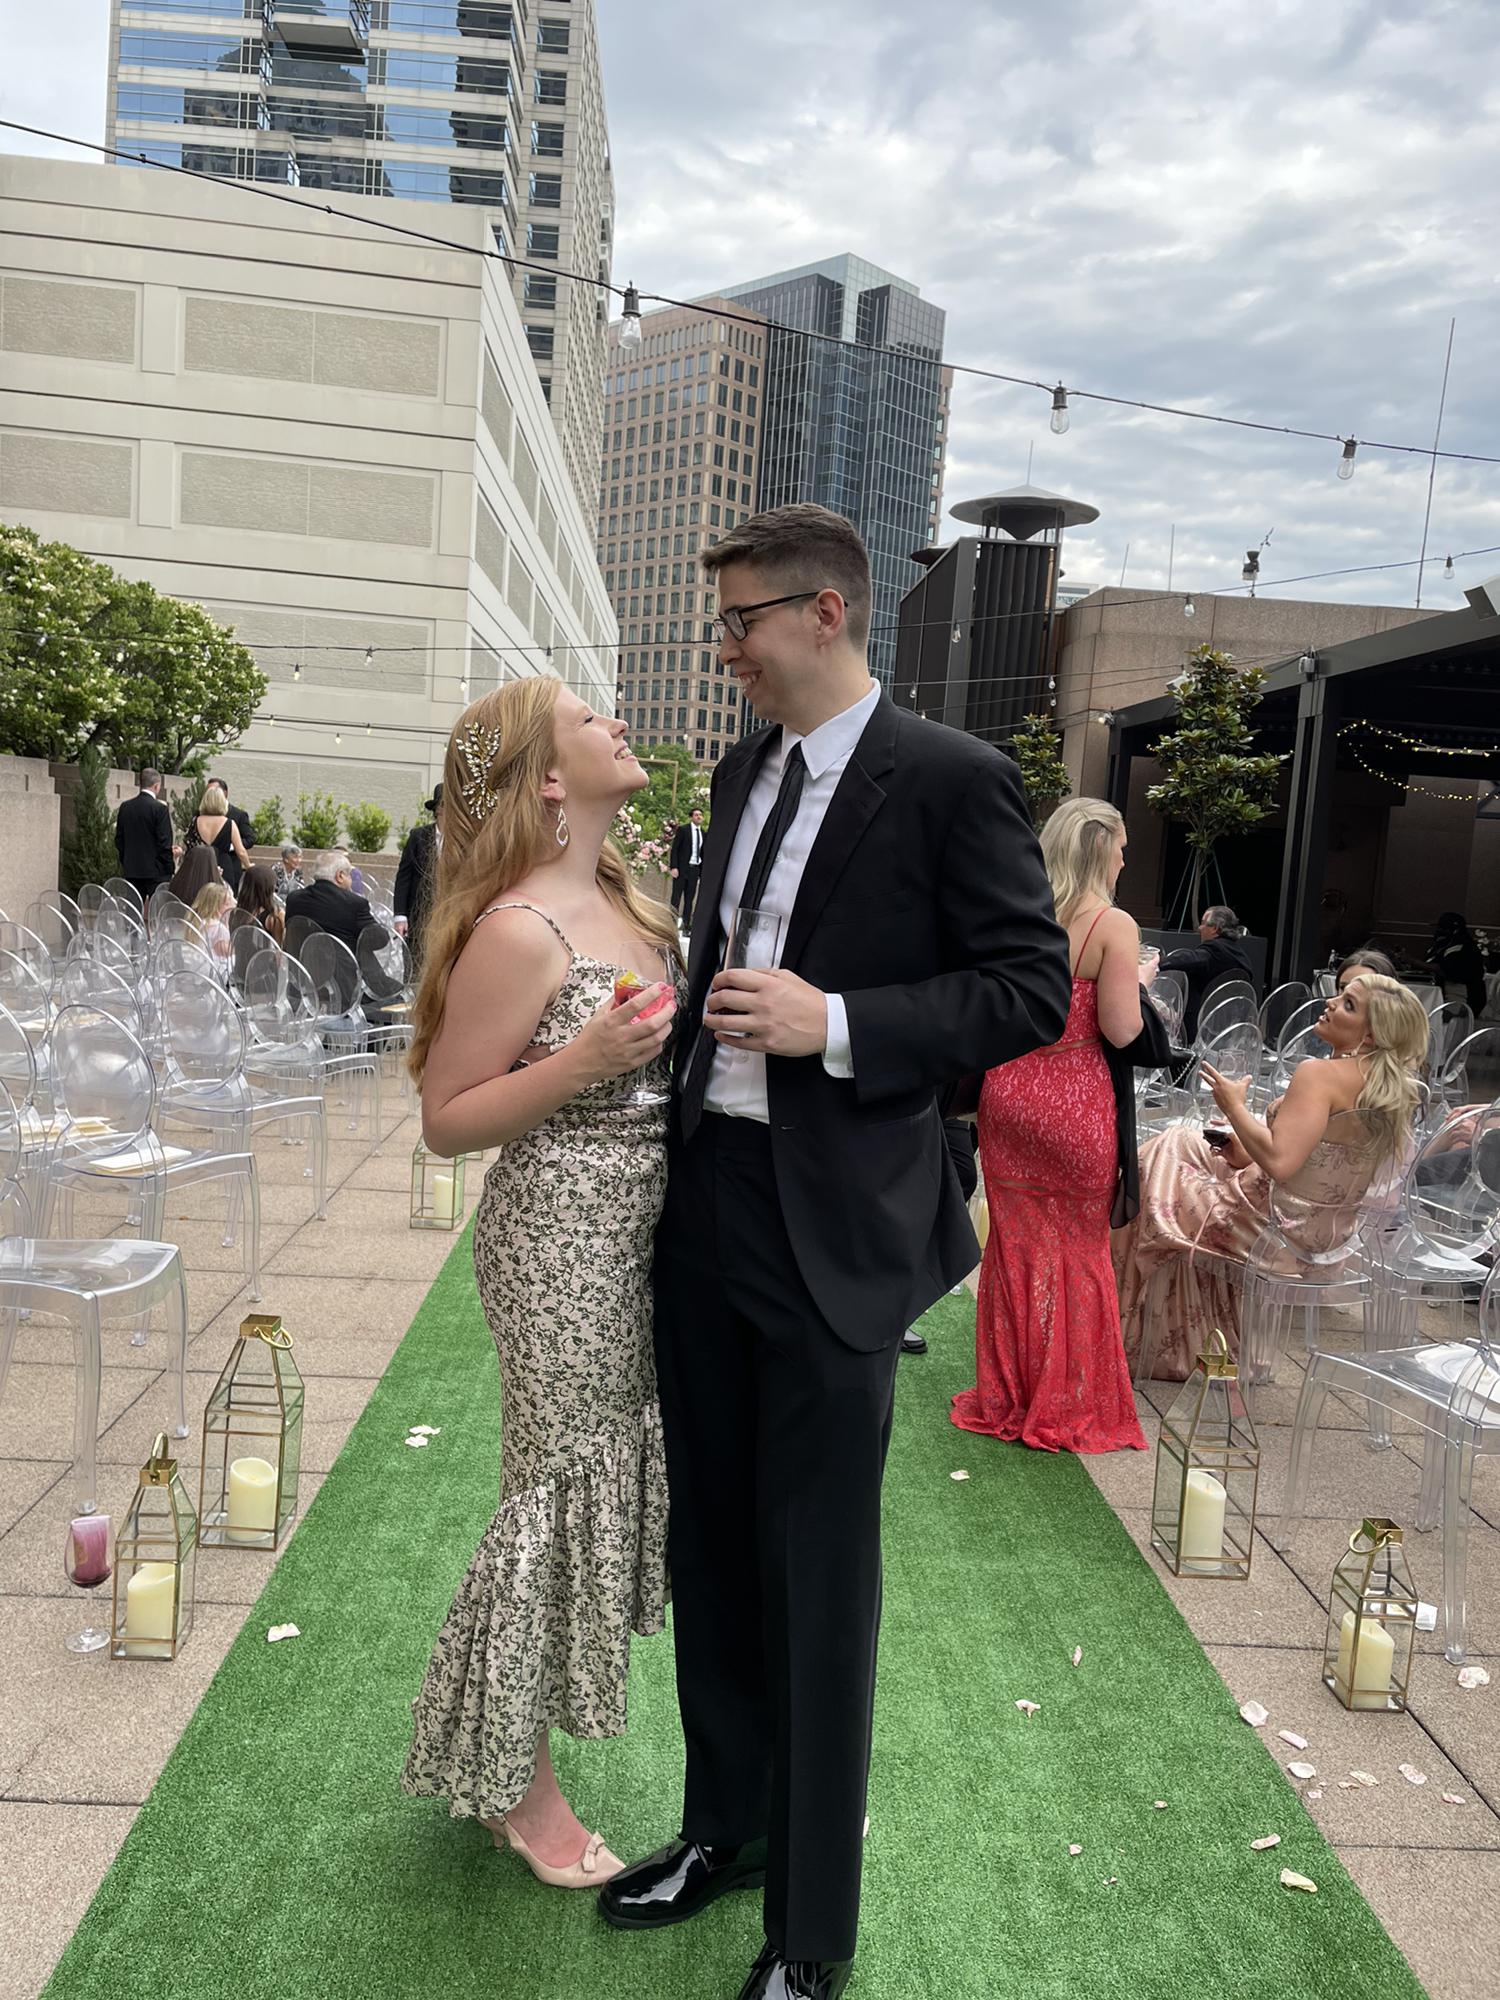 Peter and Sara’s wedding, Atlanta, GA (May 2021)